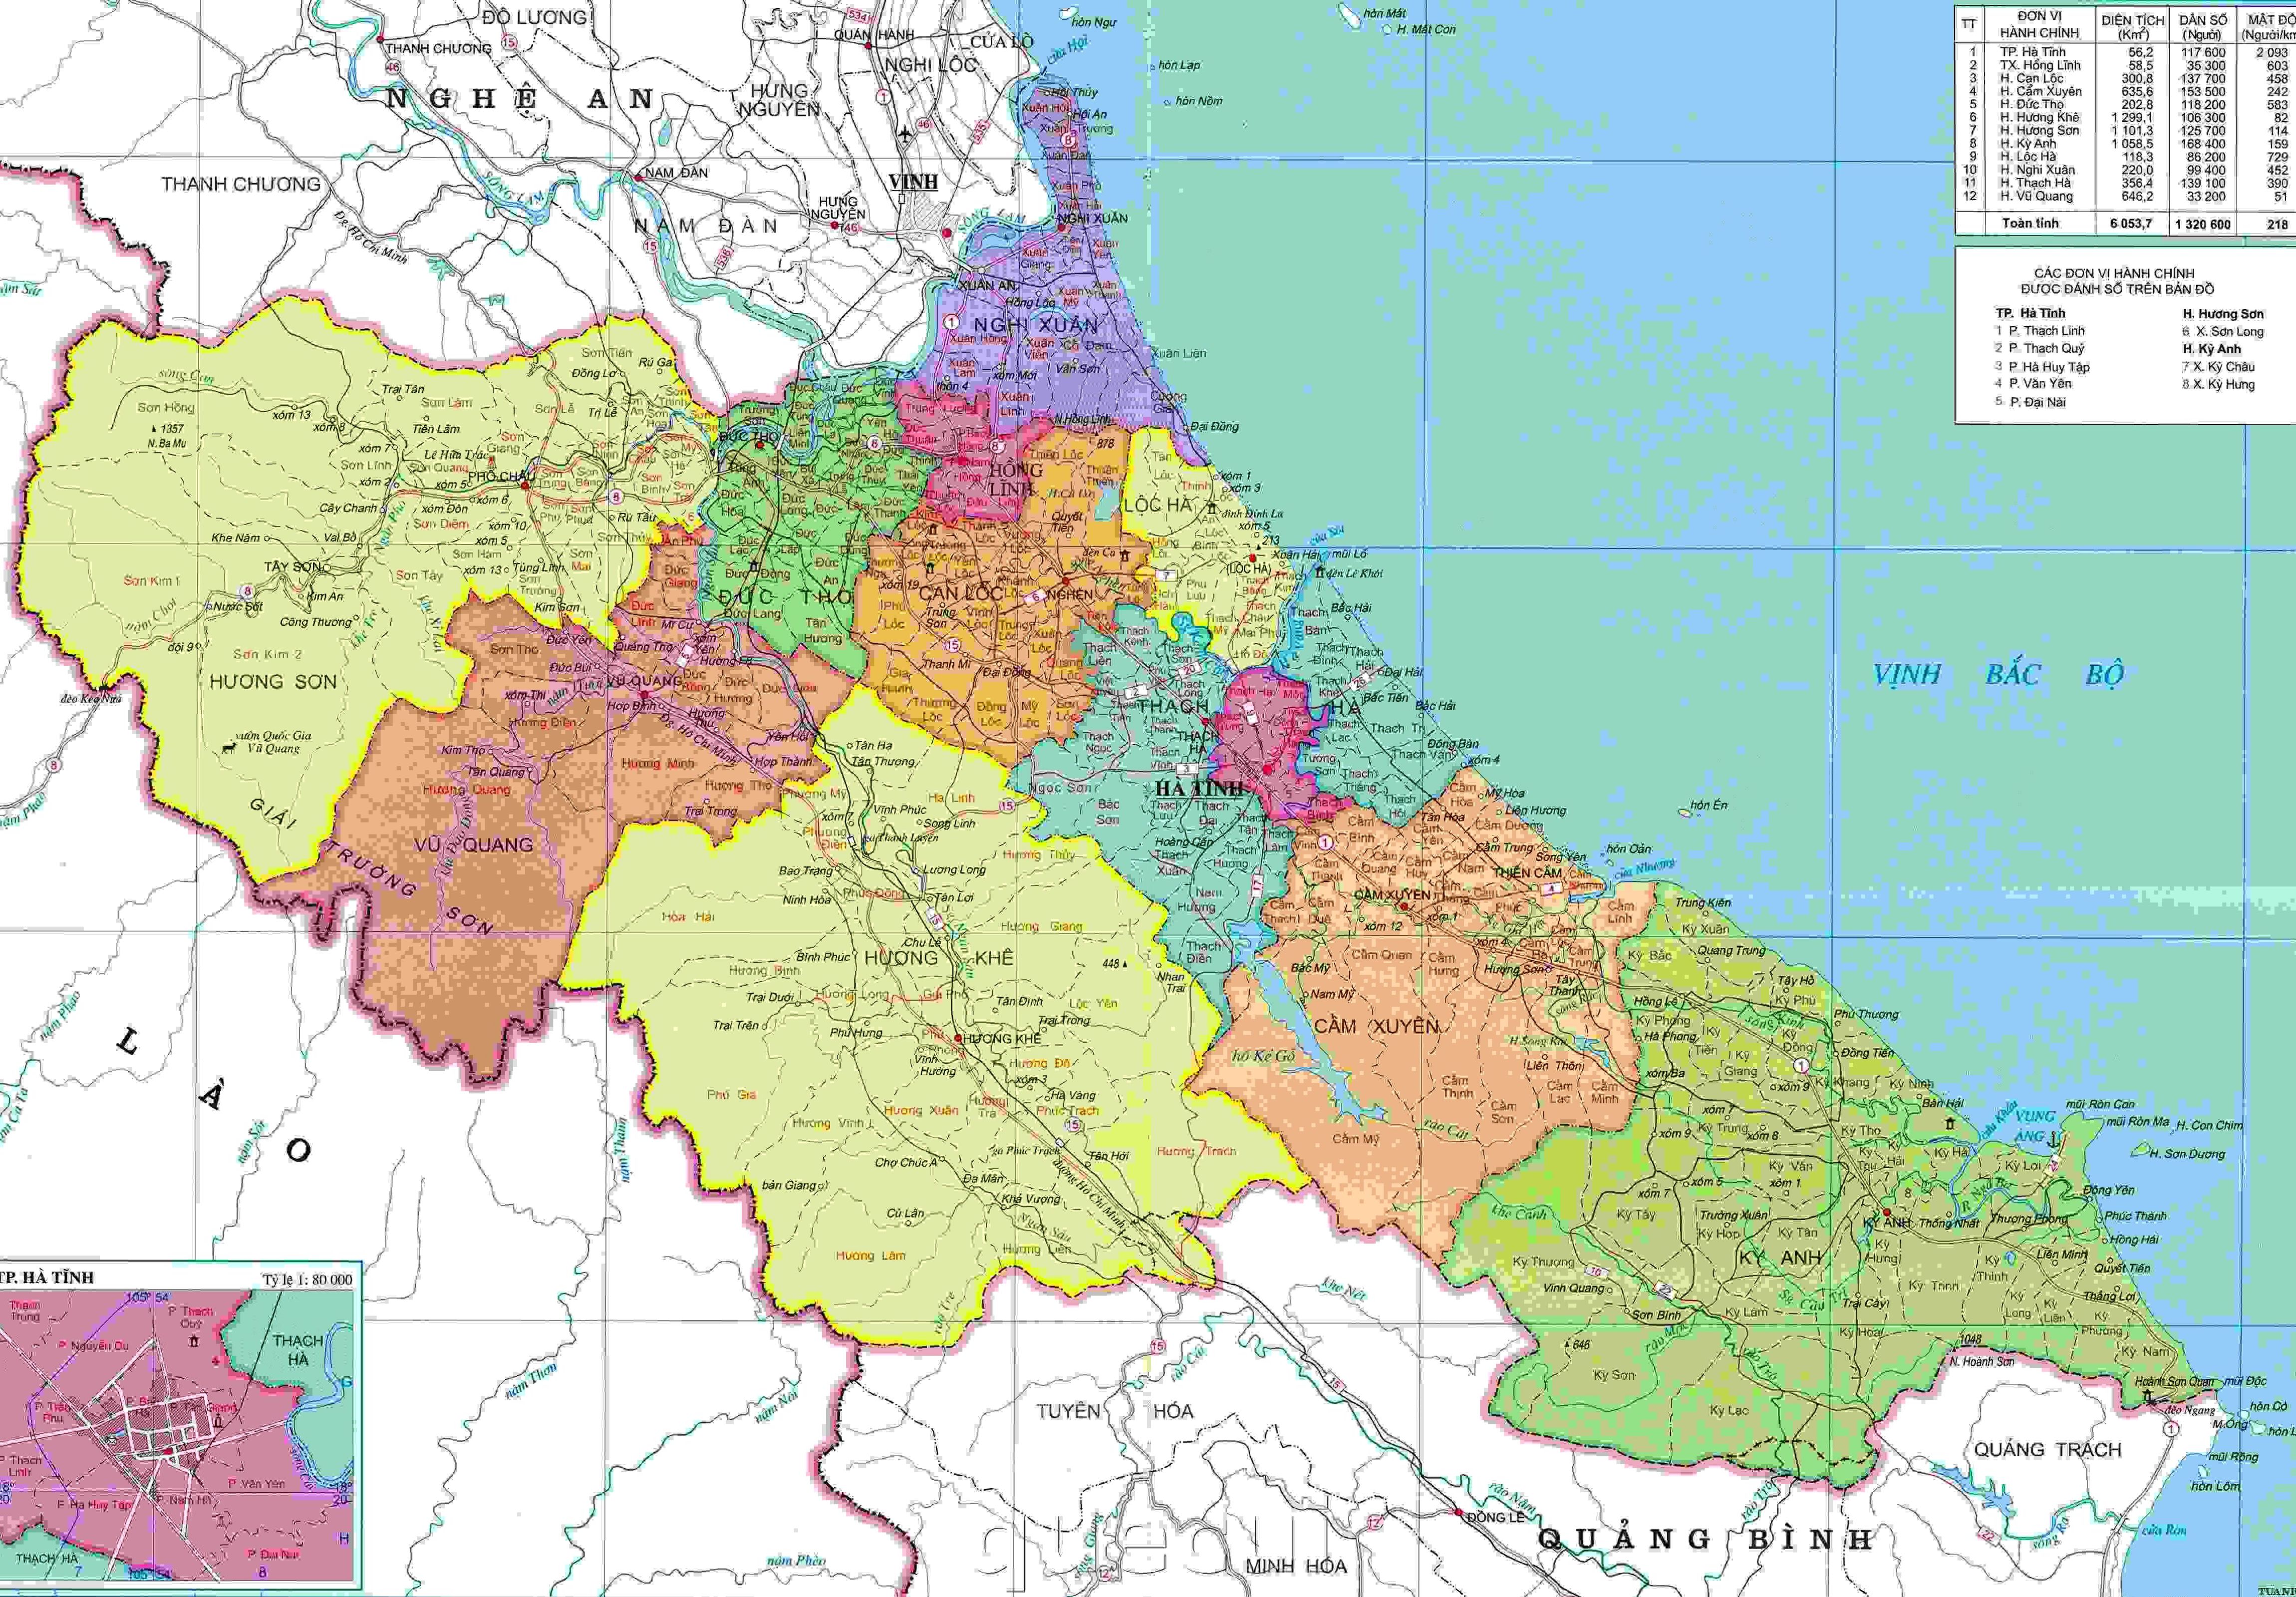 Chào mừng năm 2024, hãy cùng khám phá bản đồ hành chính của tỉnh Hà Tĩnh được cập nhật mới nhất! Với bản đồ này, bạn có thể dễ dàng tìm kiếm các địa điểm văn hóa, du lịch, kinh tế trọng điểm trong tỉnh Hà Tĩnh. Hãy tận hưởng những trải nghiệm thú vị với bản đồ hành chính của chúng tôi.